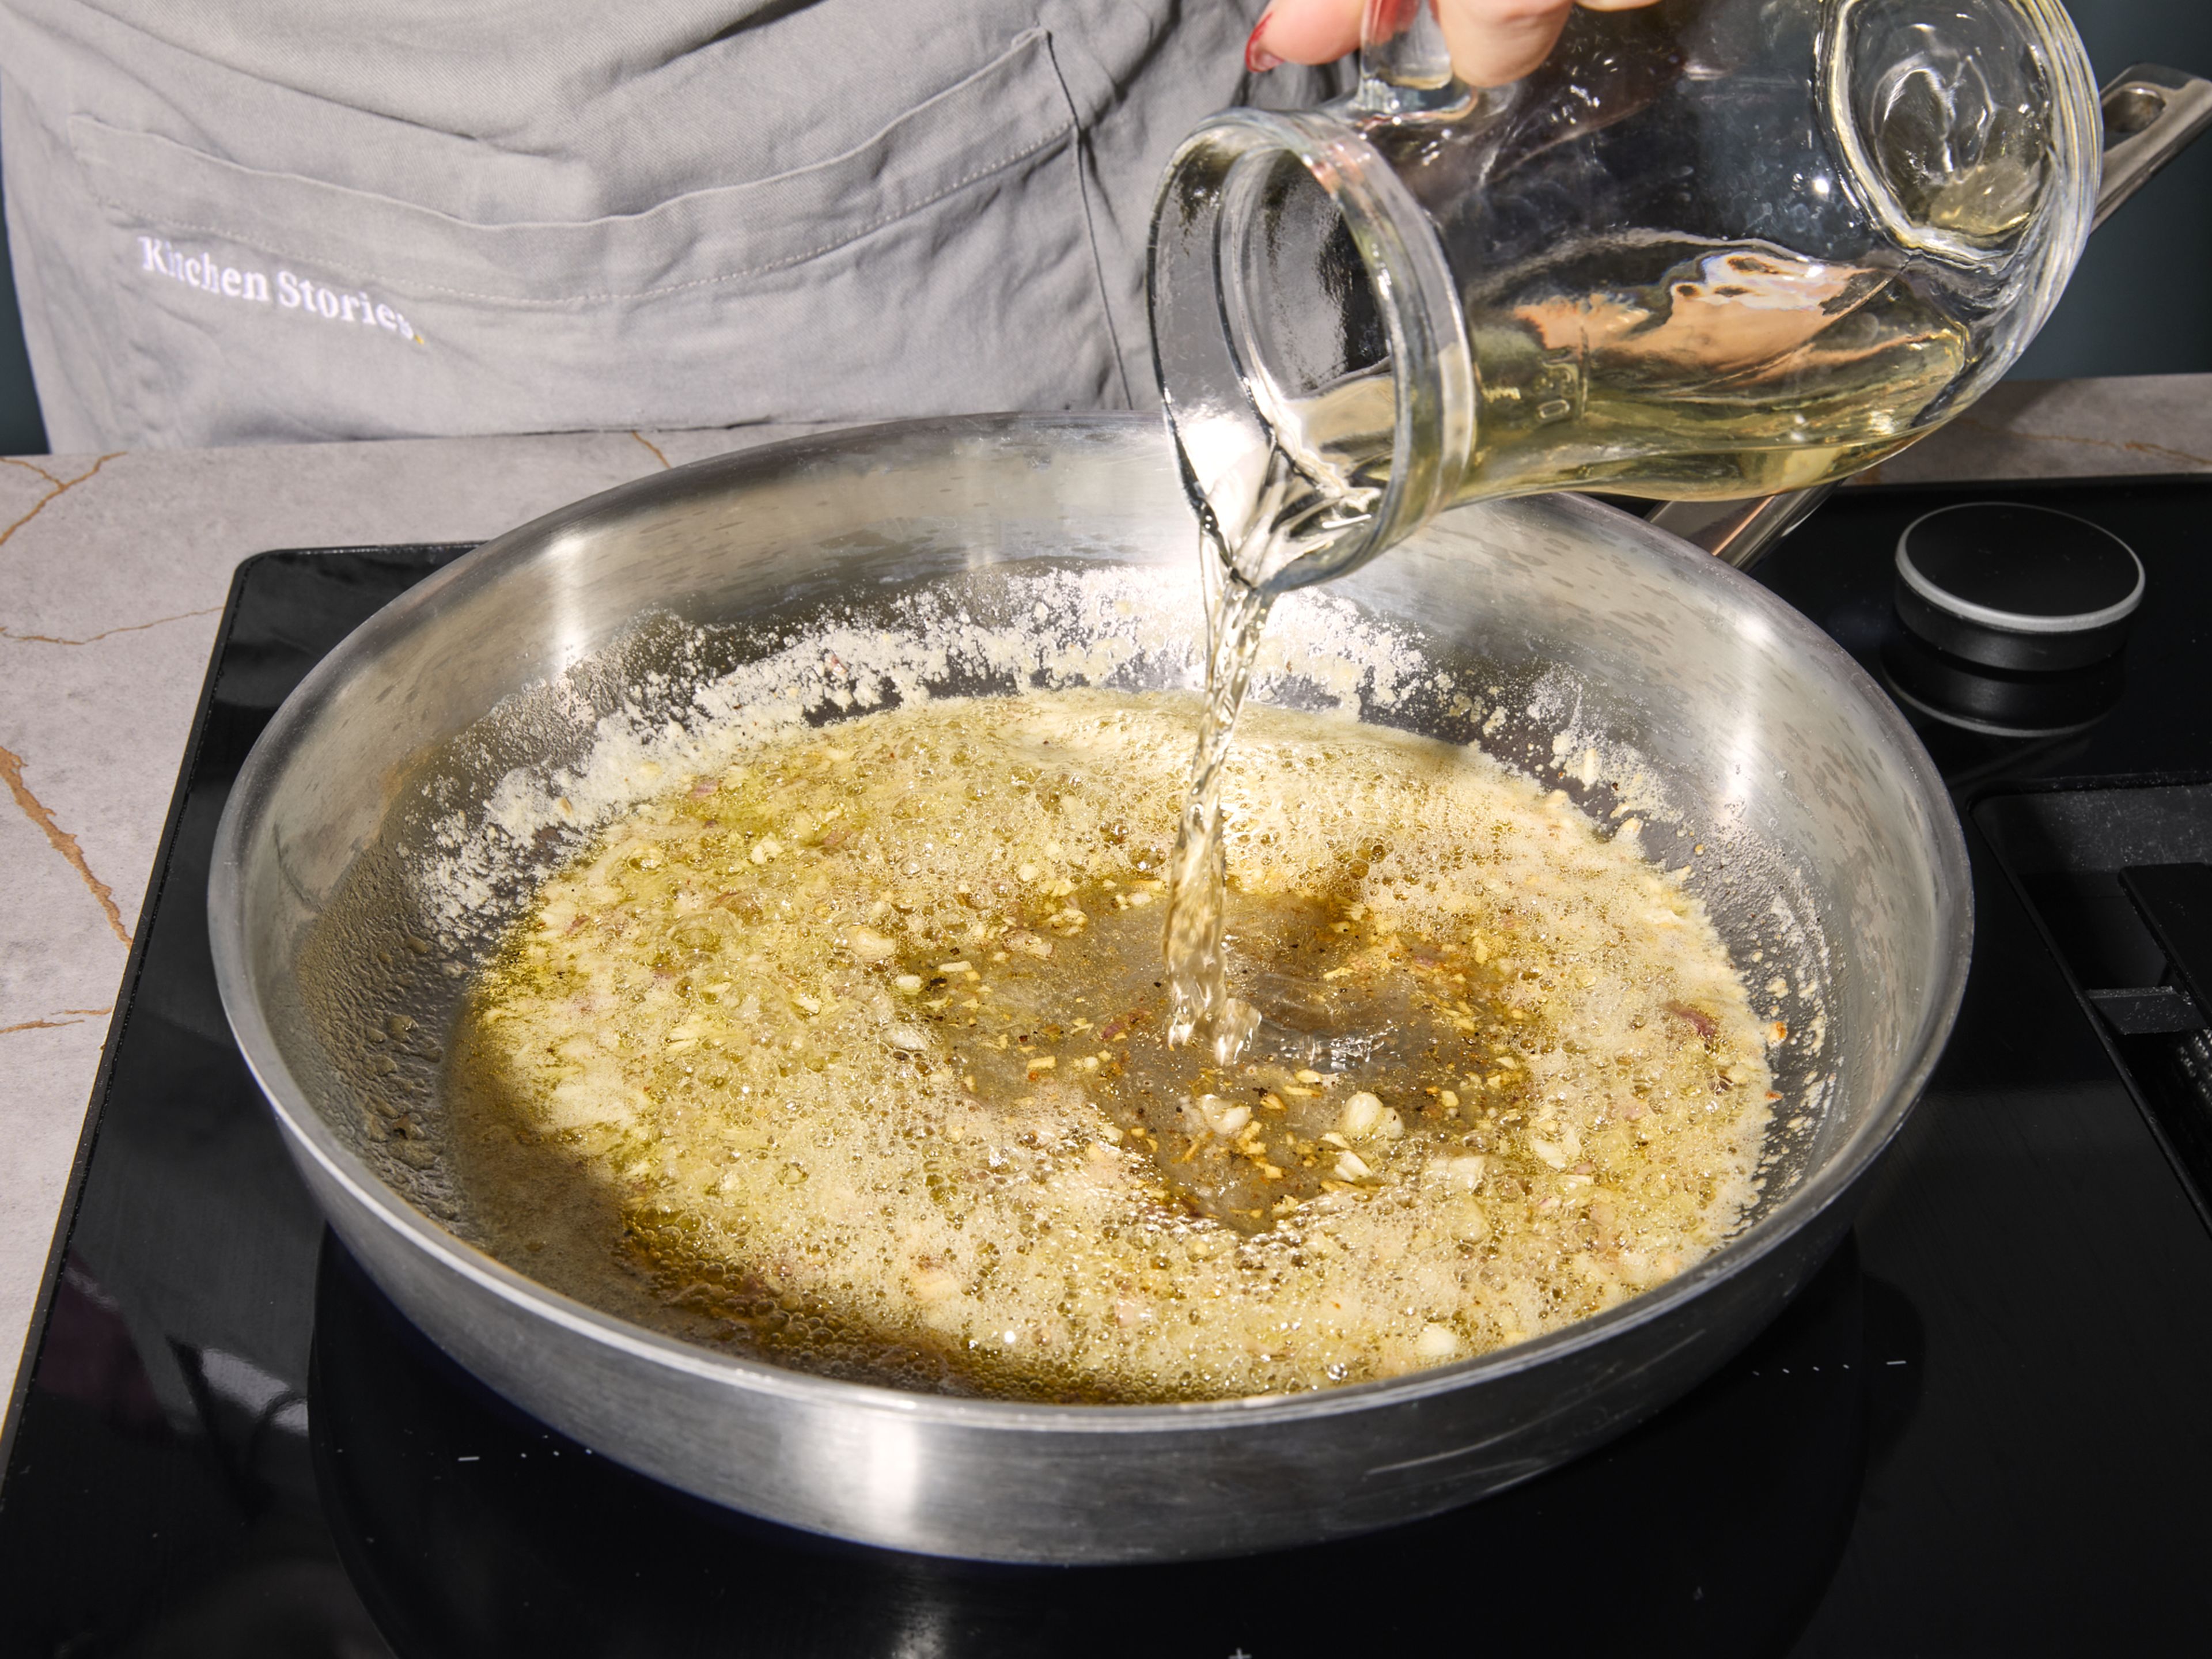 Den Backofen auf 180°C Umluft oder 200°C Ober-Unterhitze vorheizen. Dafür sorgen, dass die Fischfilets aufgetaut sind und Zimmertemperatur haben. Zitrone abreiben und entsaften, Knoblauch und Schalotte fein hacken. Das
Ei in einer kleinen Schüssel verquirlen. In einer Bratpfanne bei mittlerer Hitze ⅔ der Butter schmelzen. Knoblauch und Schalotten zugeben und ca. 3 Min. lang glasig dünsten. Mit Weißwein und ⅓ des Zitronensafts ablöschen, mit Salz und Pfeffer würzen. Weitere ca. 4 Min. kochen.